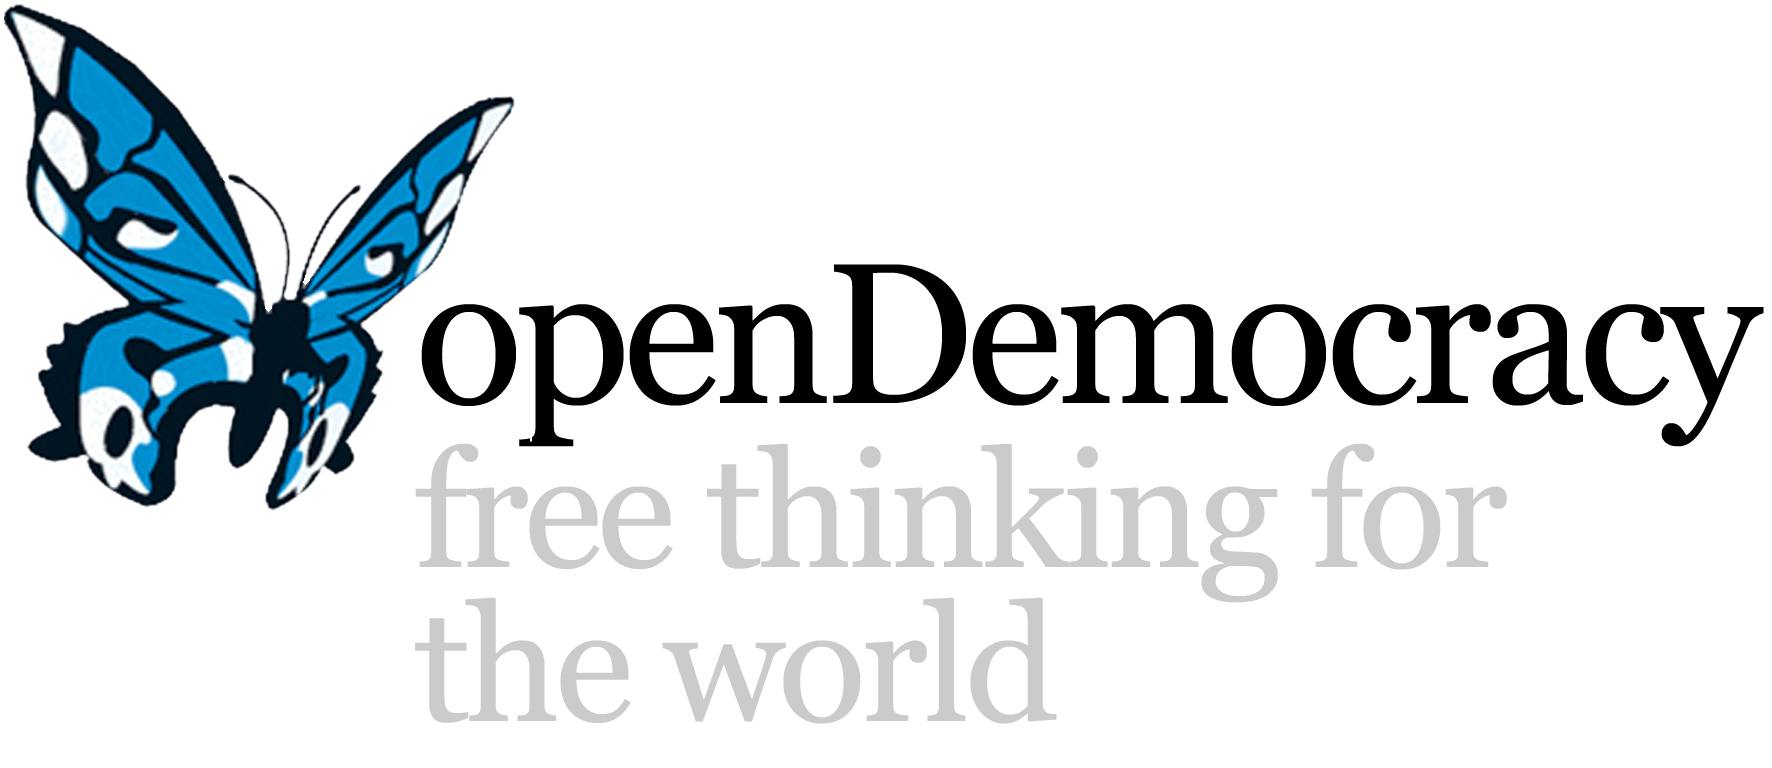 Opendemocracy 300dpi